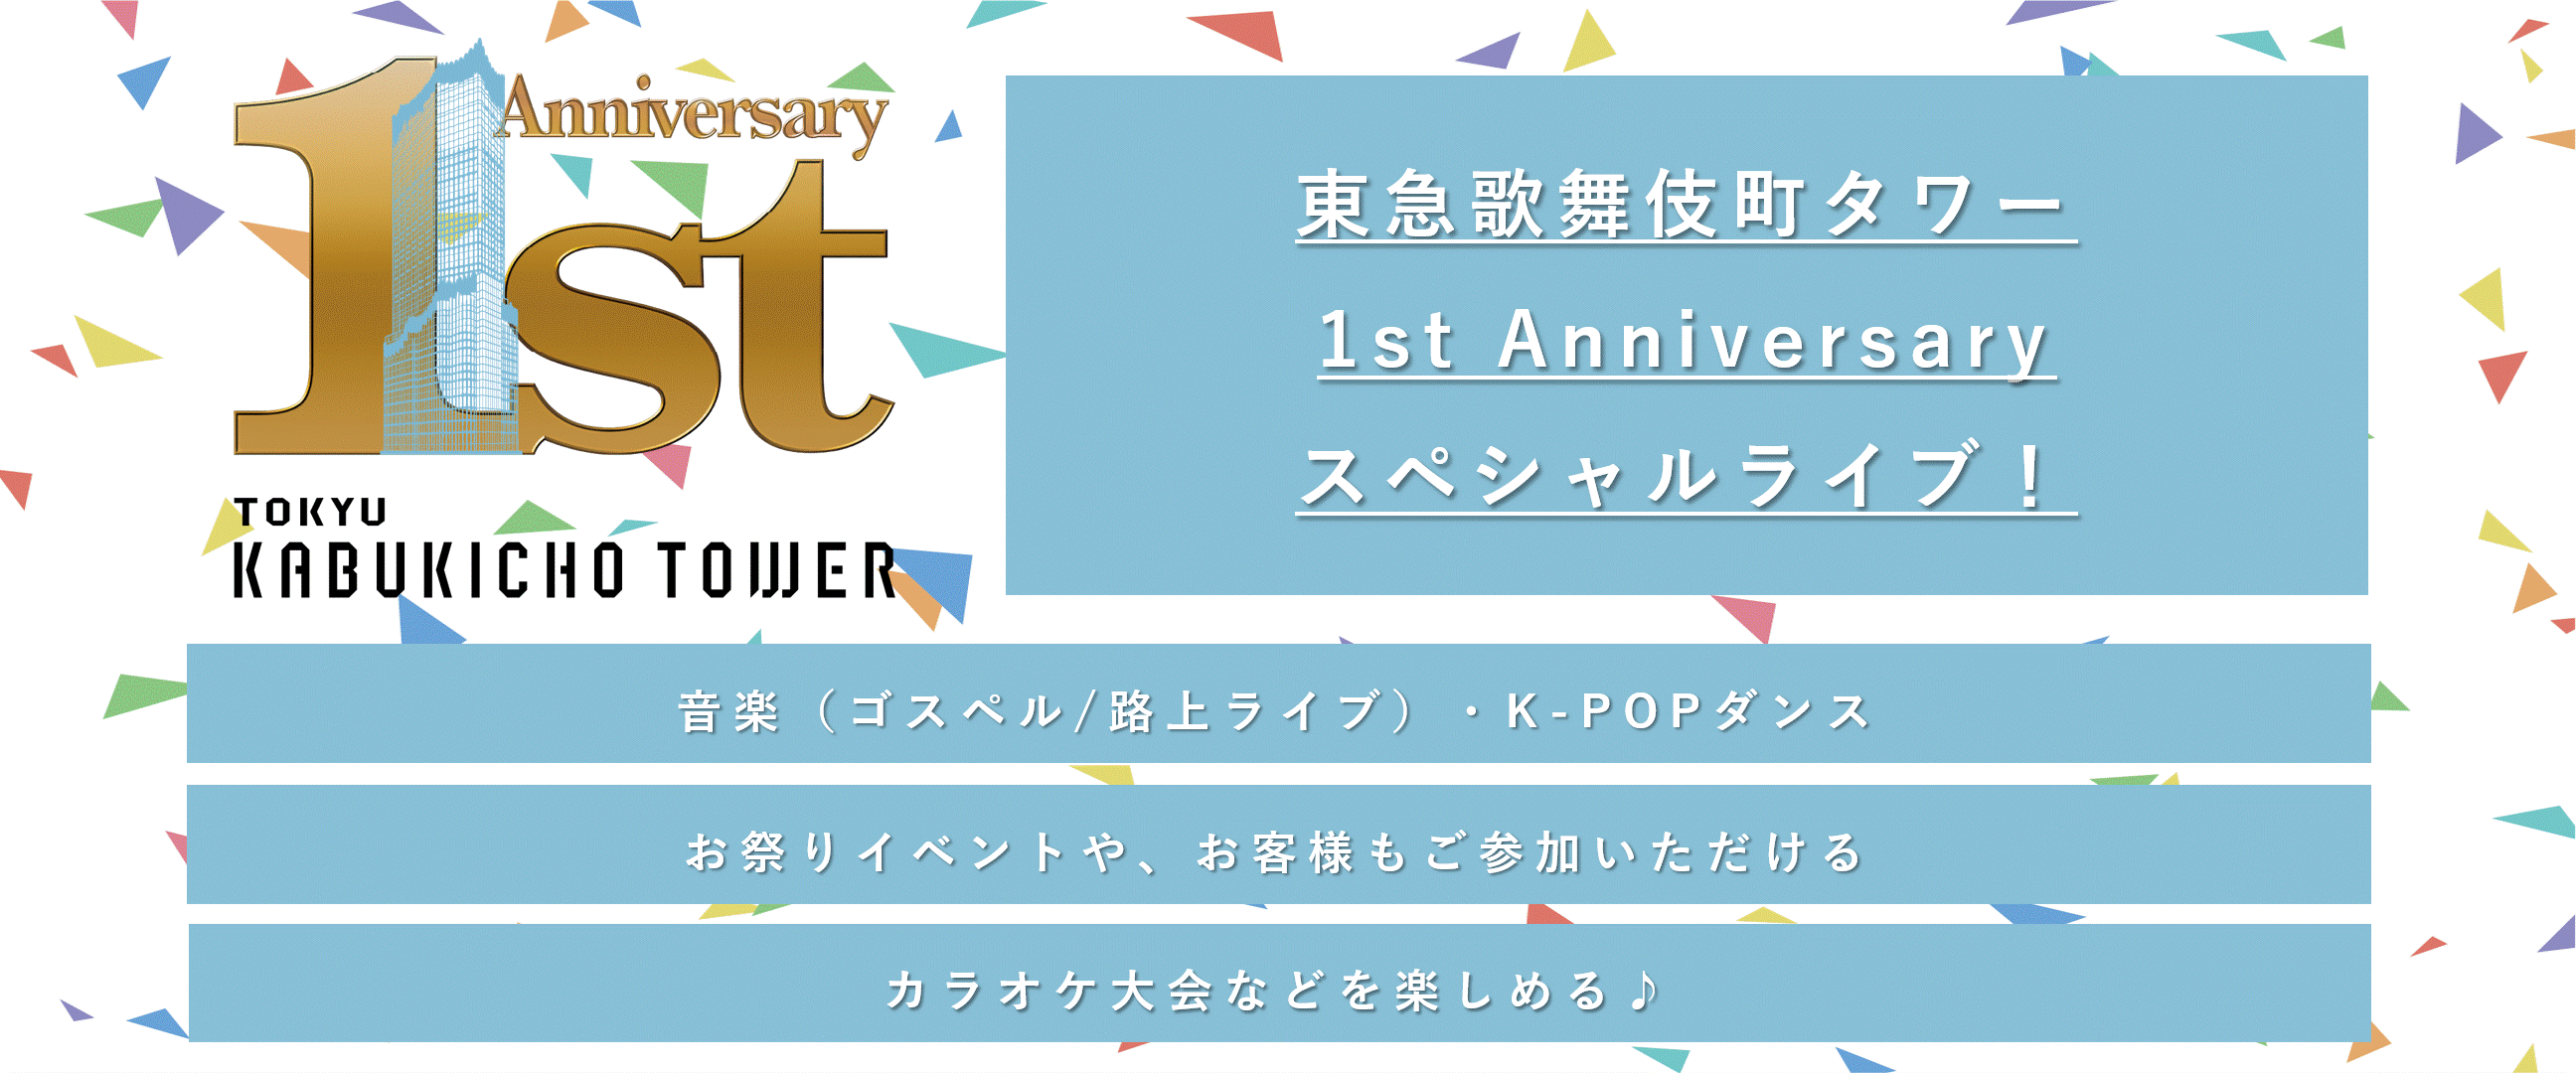 東急歌舞伎町タワー1st Anniversary スペシャルライブ 詳細情報